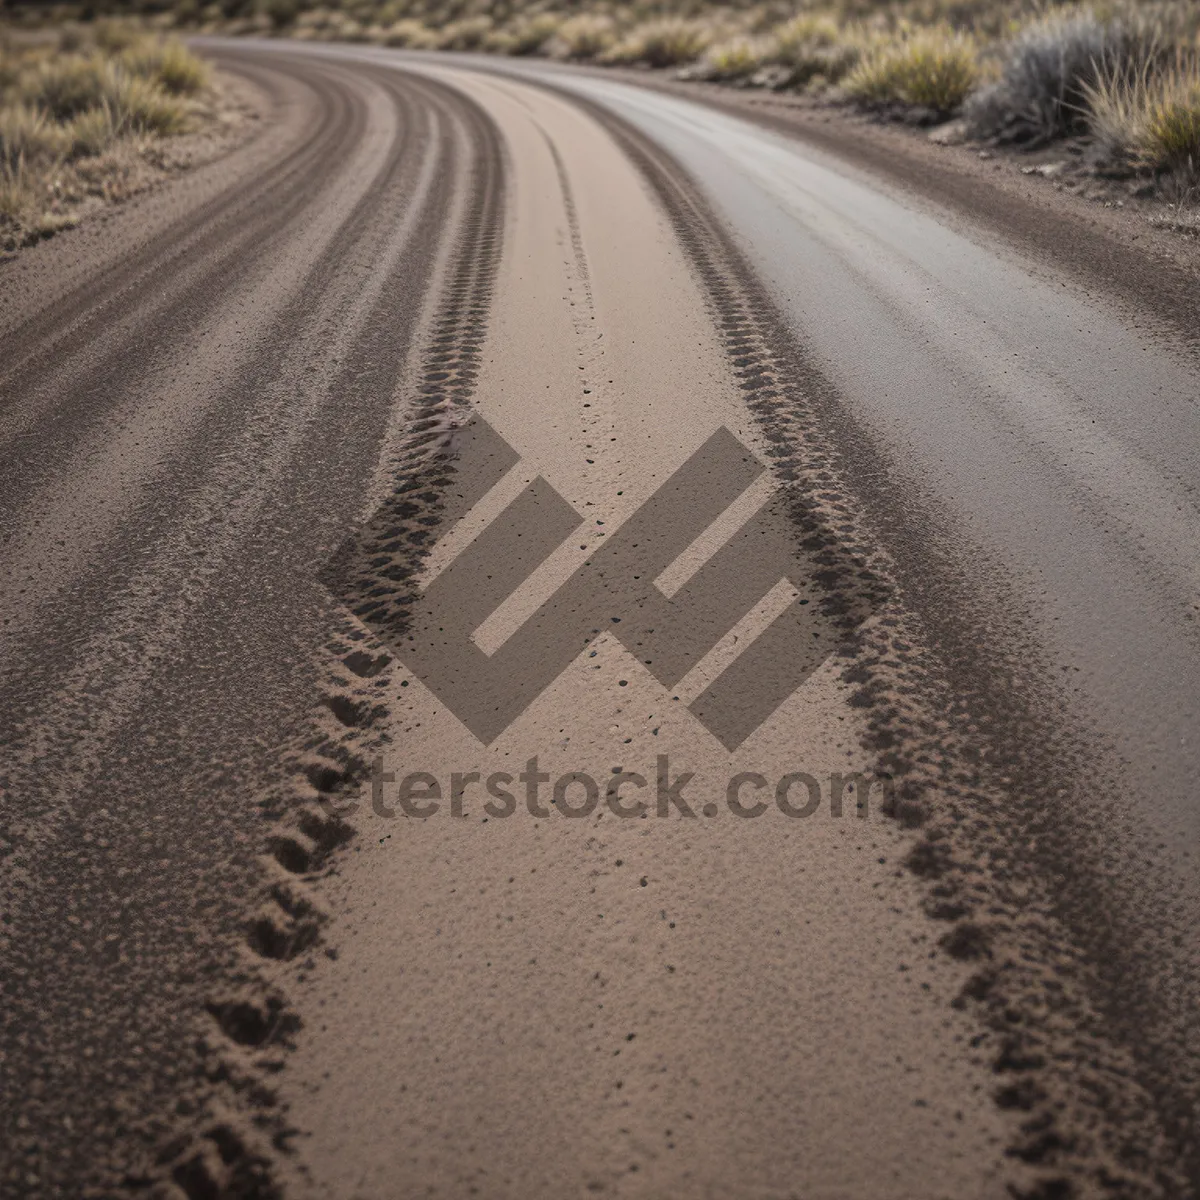 Picture of Vast Desert Highway - Scenic Journey through Sandy Dunes